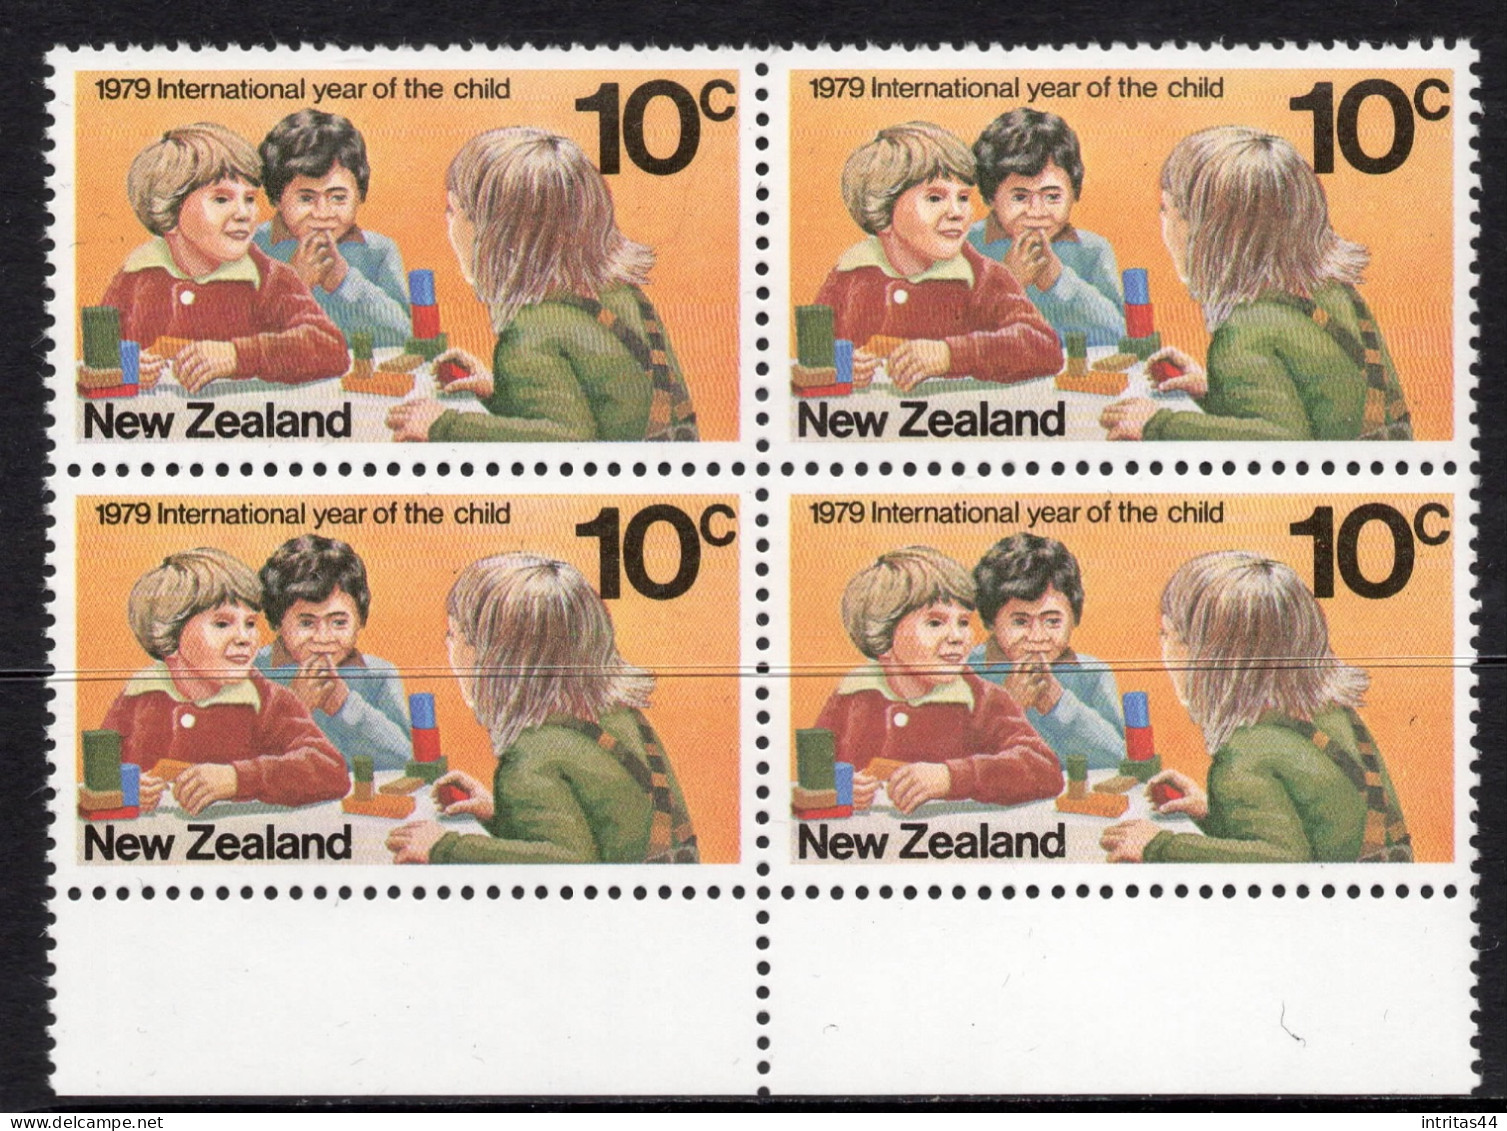 NEW ZEALAND 1979 I.Y.C. 10c "CHILDREN" SELVEDGE BLOCK OF (4)  MNH - Hojas Bloque